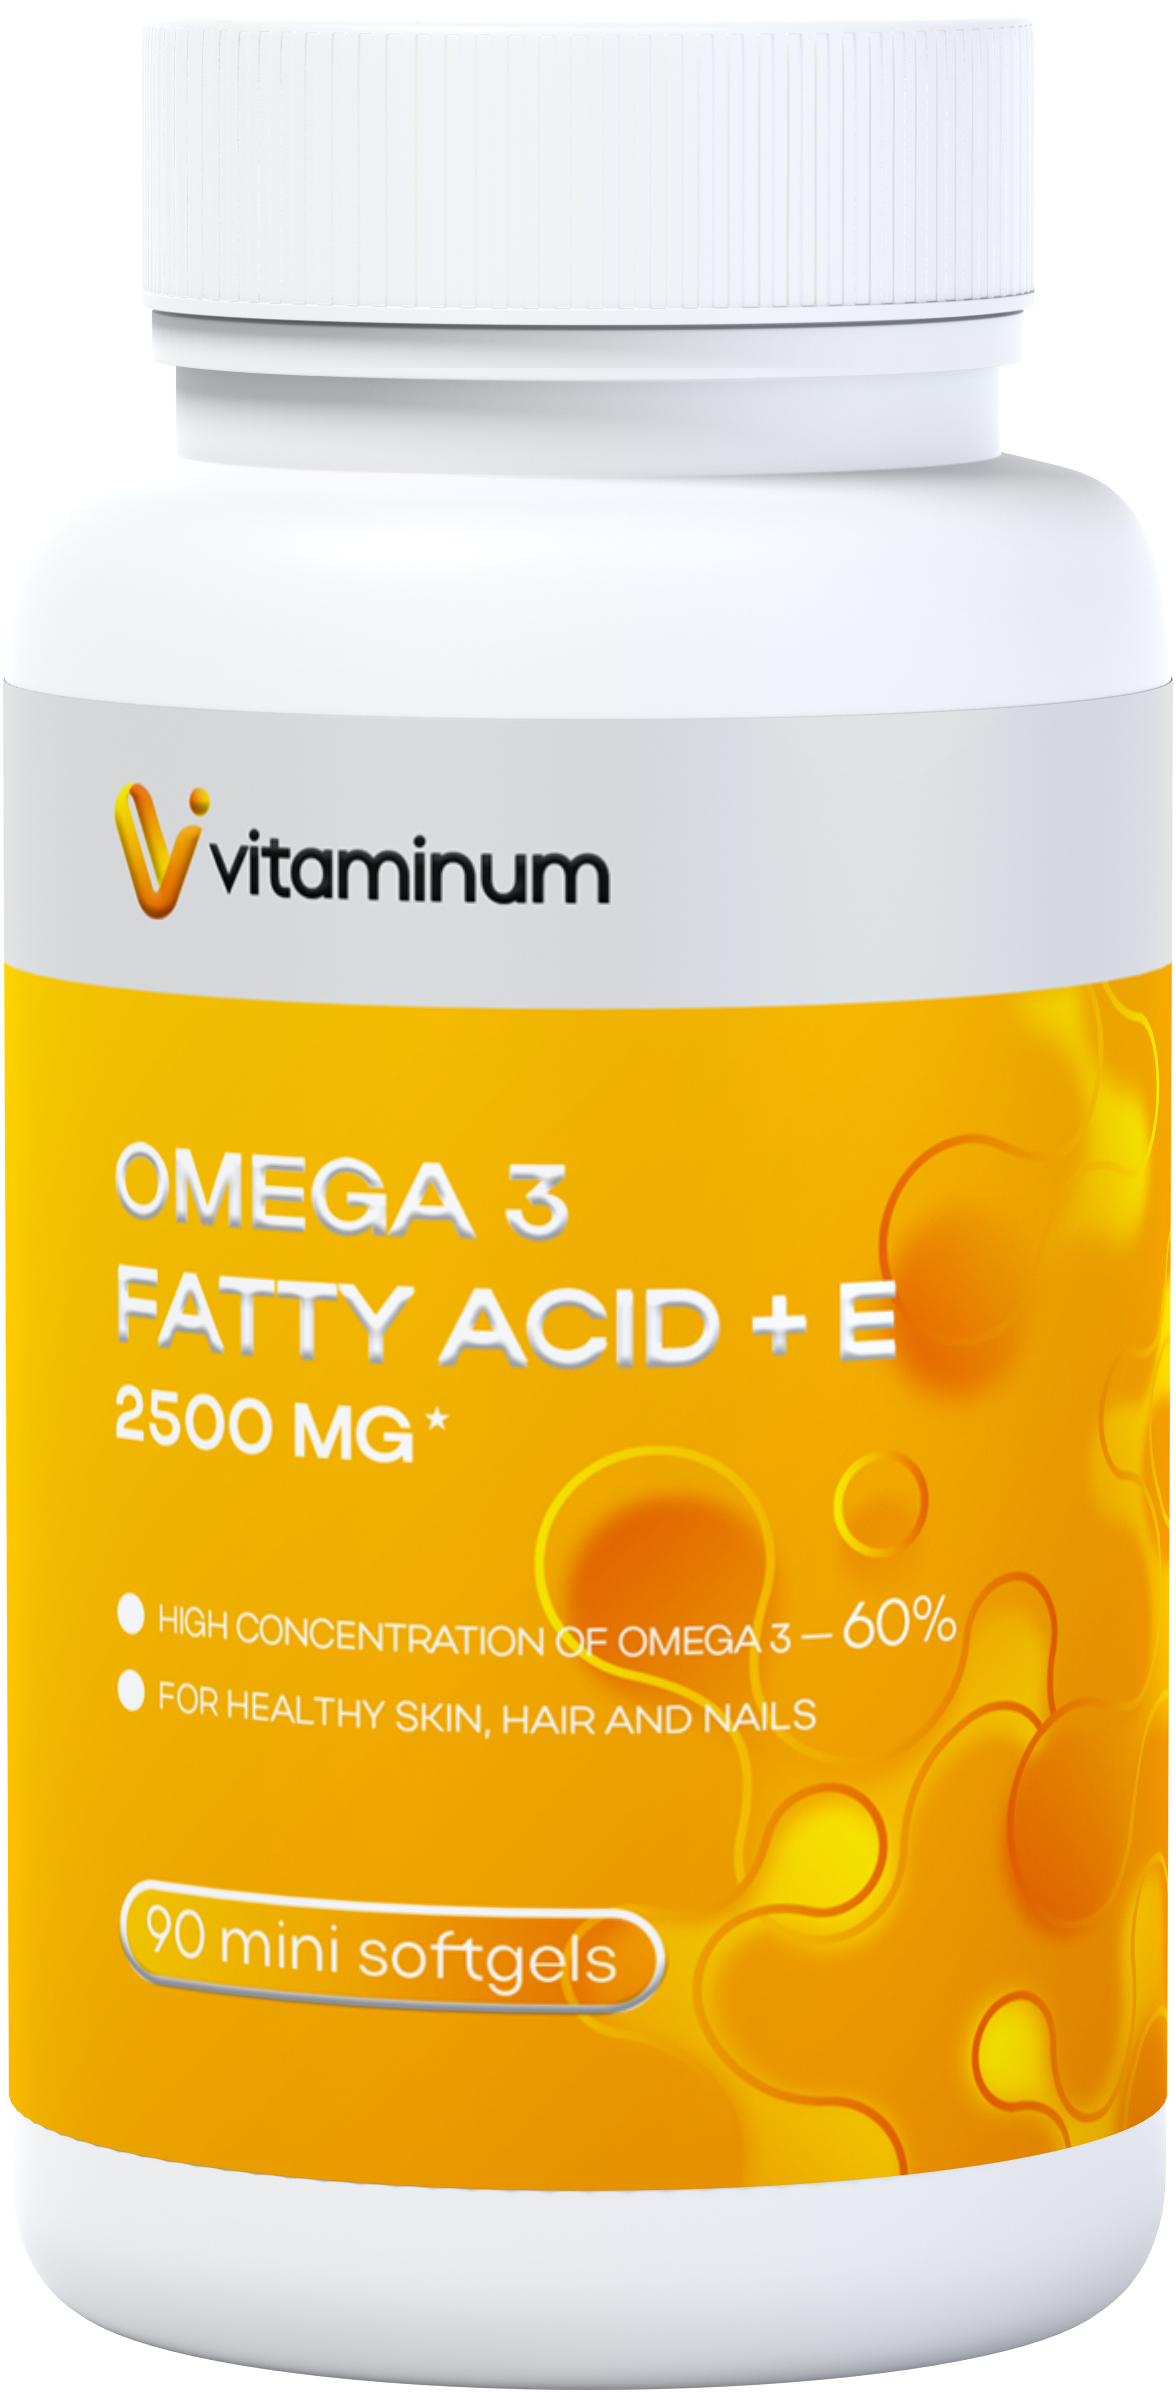  Vitaminum ОМЕГА 3 60% + витамин Е (2500 MG*) 90 капсул 700 мг   в Сыктывкаре